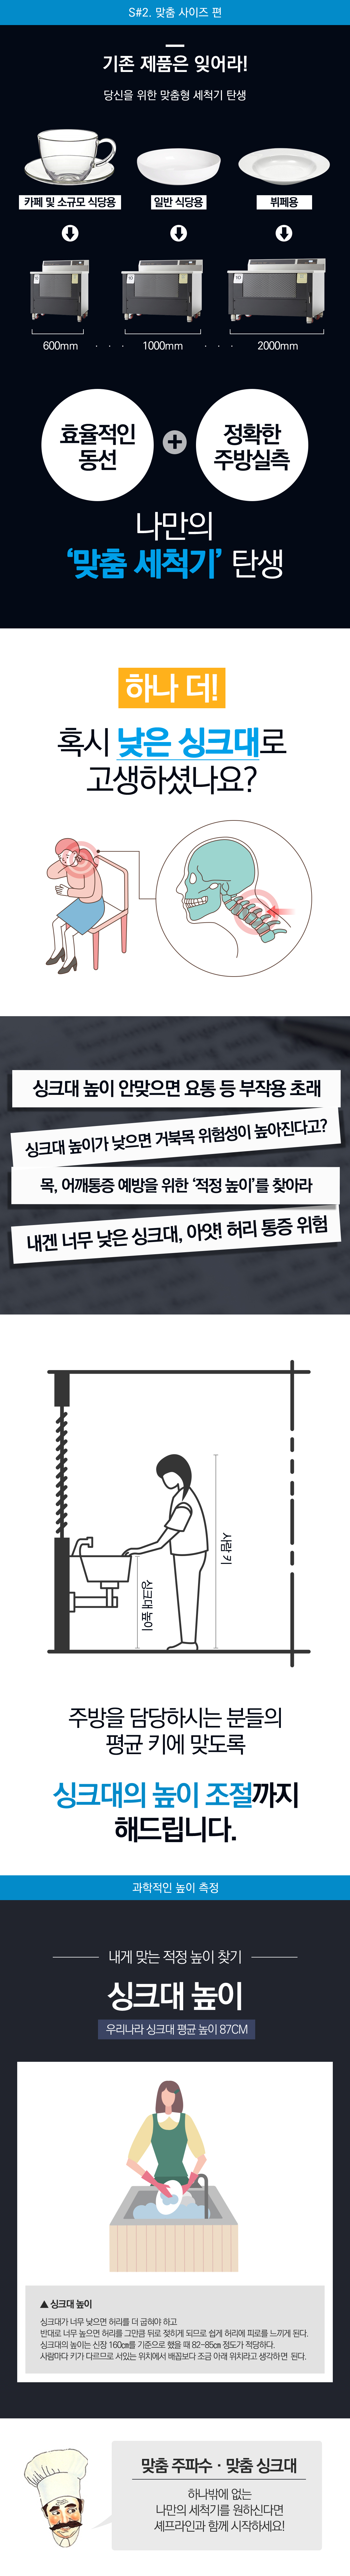 초음파세척기 기술 소개2